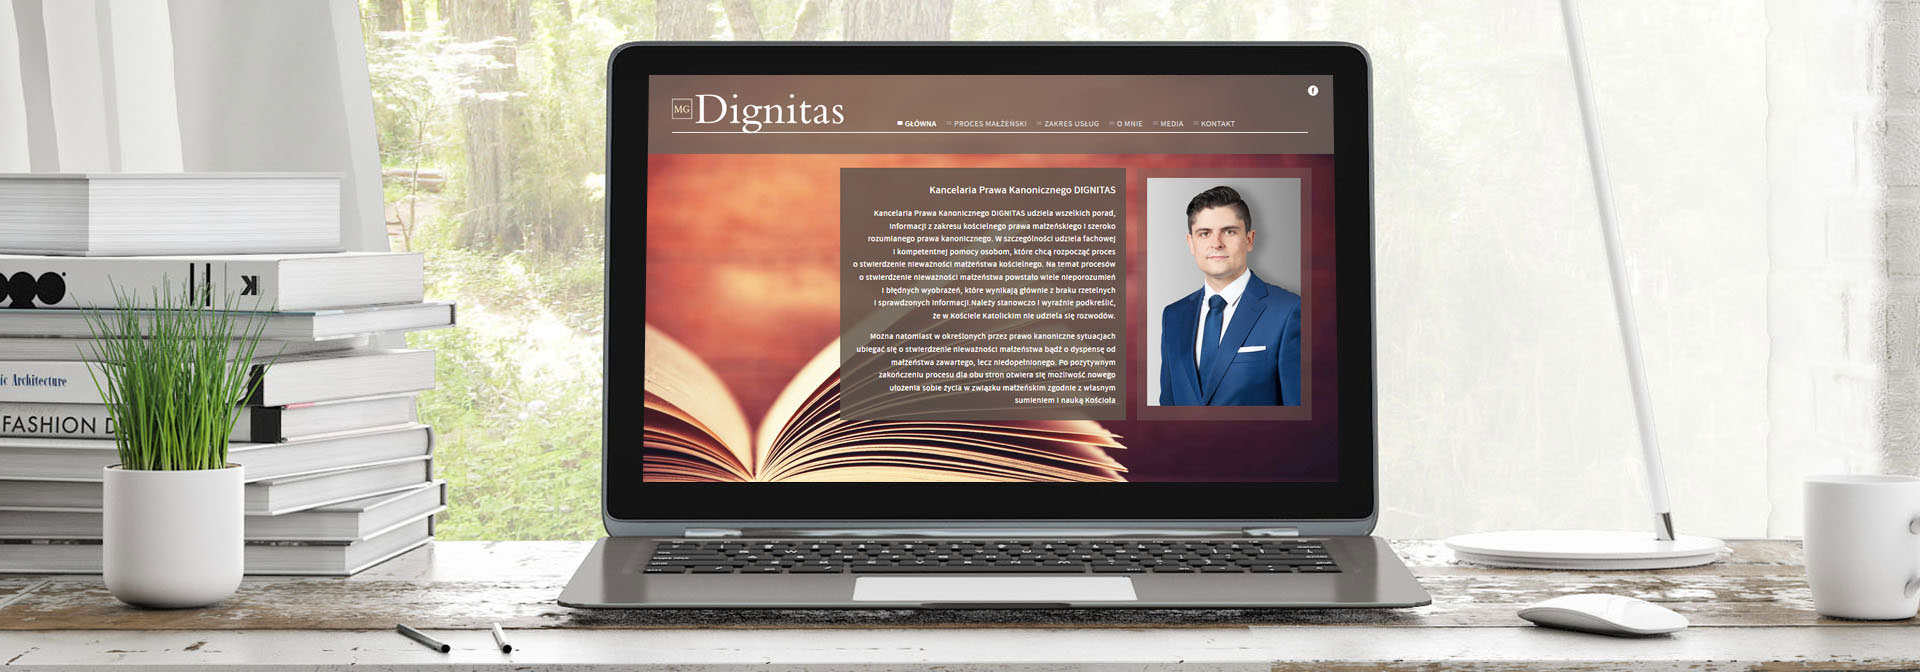 Strona Główna kancelarii Dignitas wraz ze zdjęciem Macieja Górala